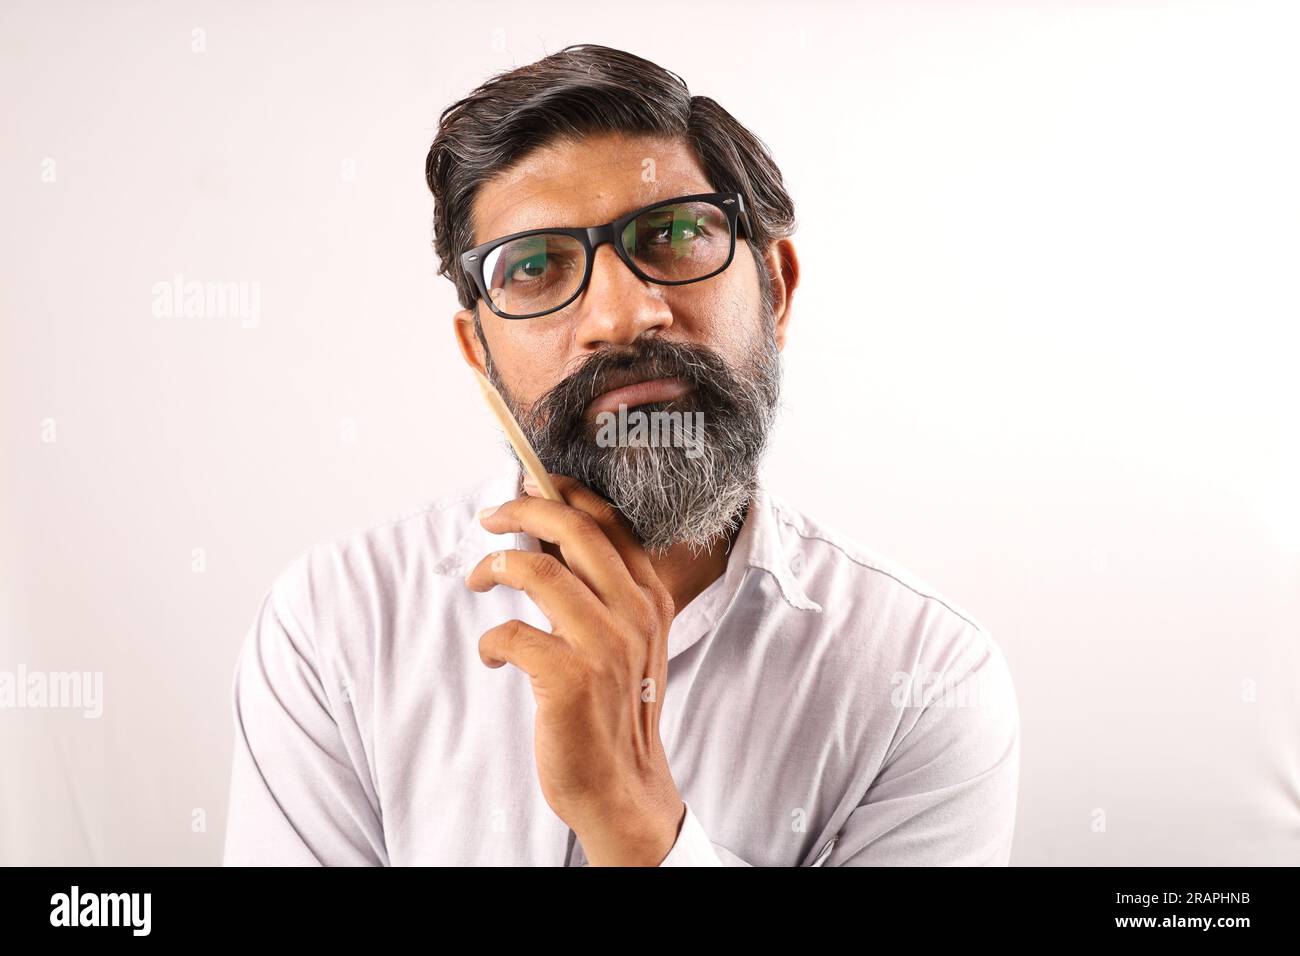 Ritratto di un uomo barbuto indiano che indossa una camicia. Espressioni funky tristi e sgradevoli, piene di dolore e di rammarico. Angoscia disperazione uomo scontento. Foto Stock